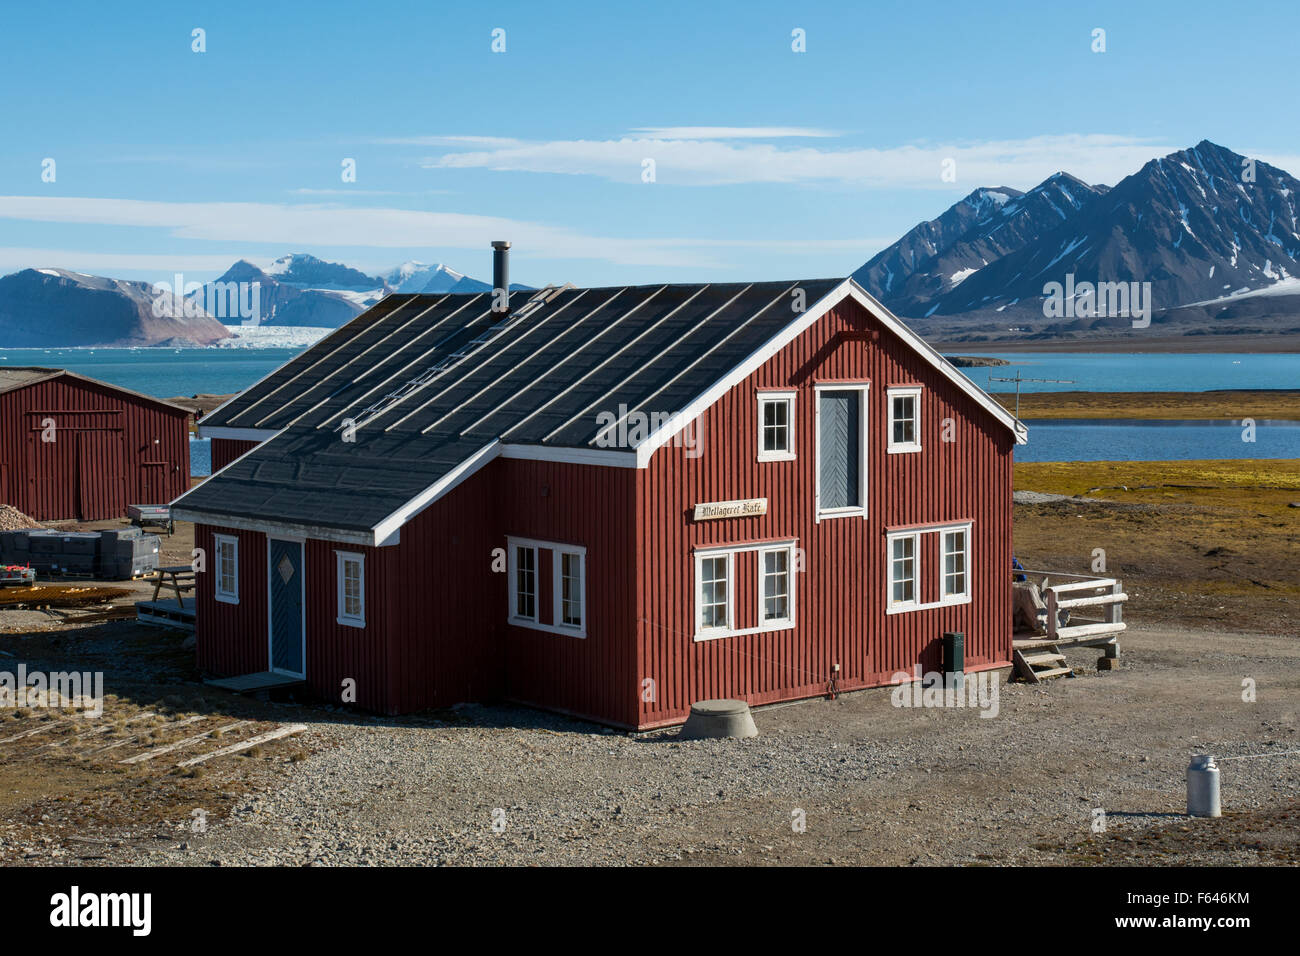 Norvegia, il Mare di Barents, Svalbard, Spitsbergen. Ny Alesund, Mellageret magazzino, c. 1919, una volta utilizzato per memorizzare il caffè, zucchero, ecc. Foto Stock